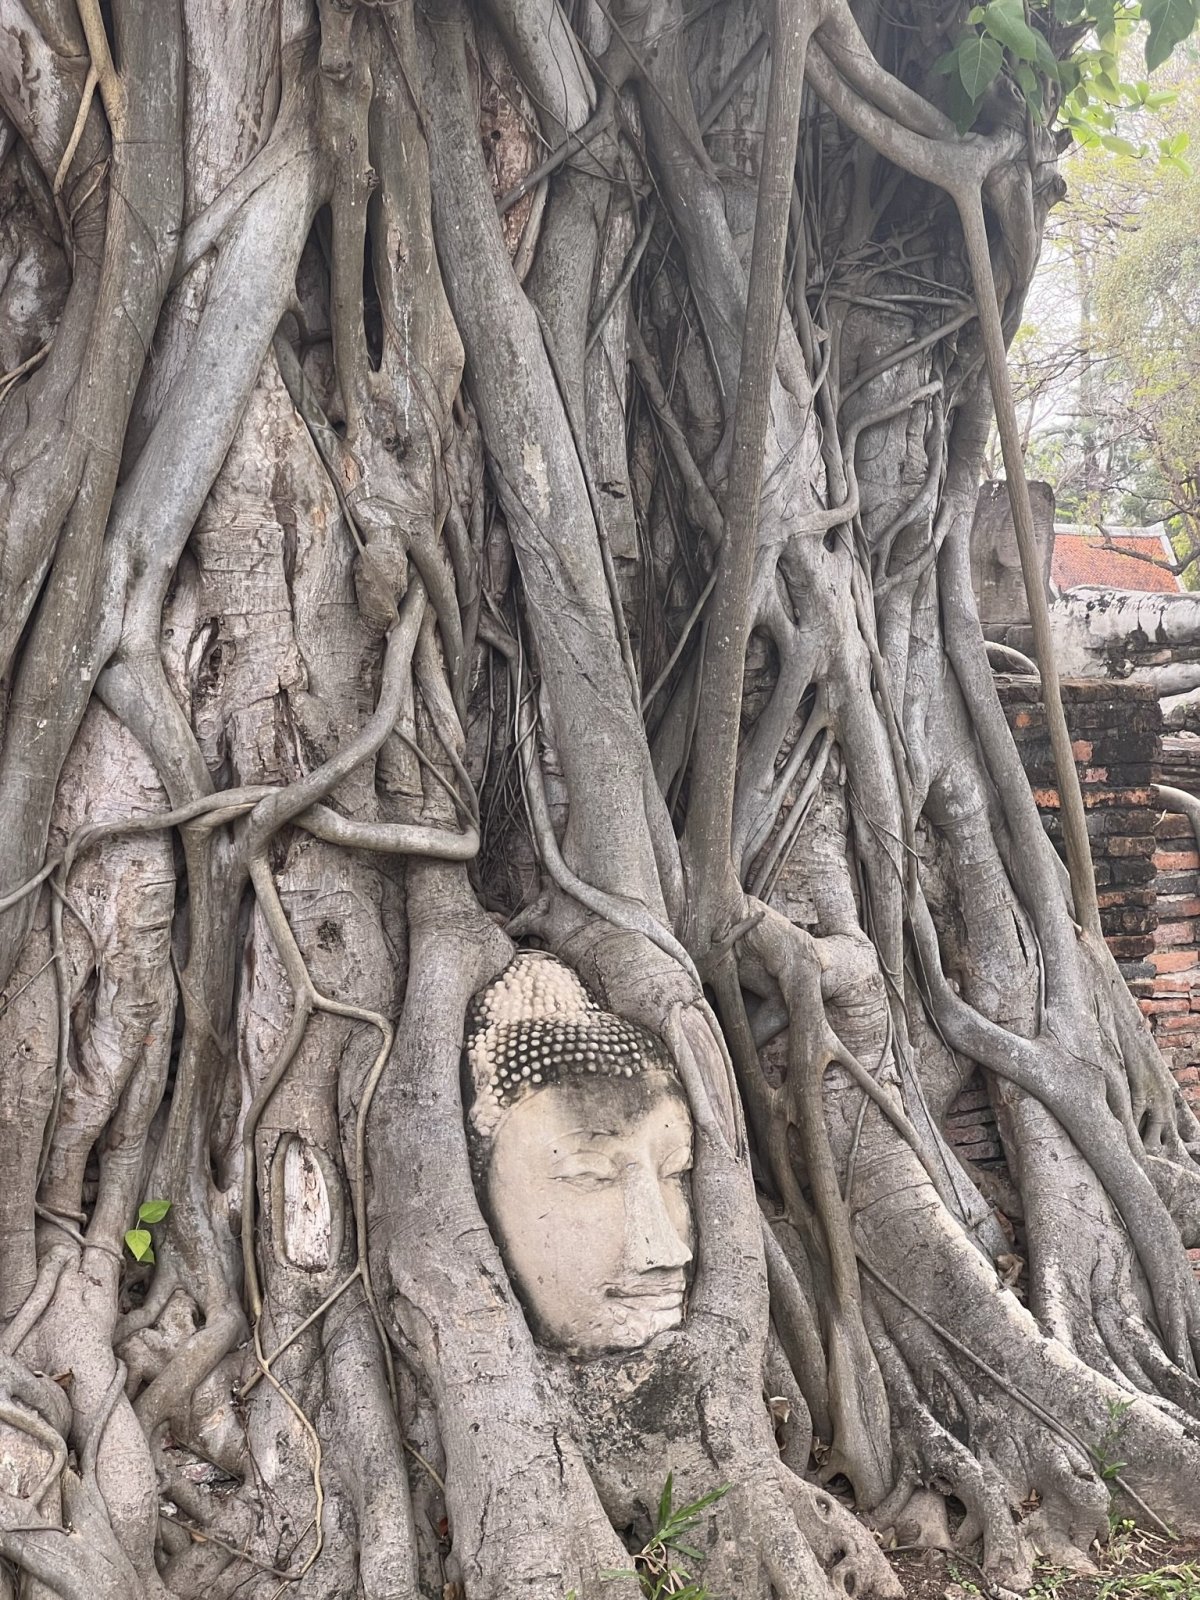 Ikonická hlava Buddhy vystupující z kořenů stromu. Hlava byla ukryta v zemi a tím, jak strom rostl, se pomalu dostávala na povrc